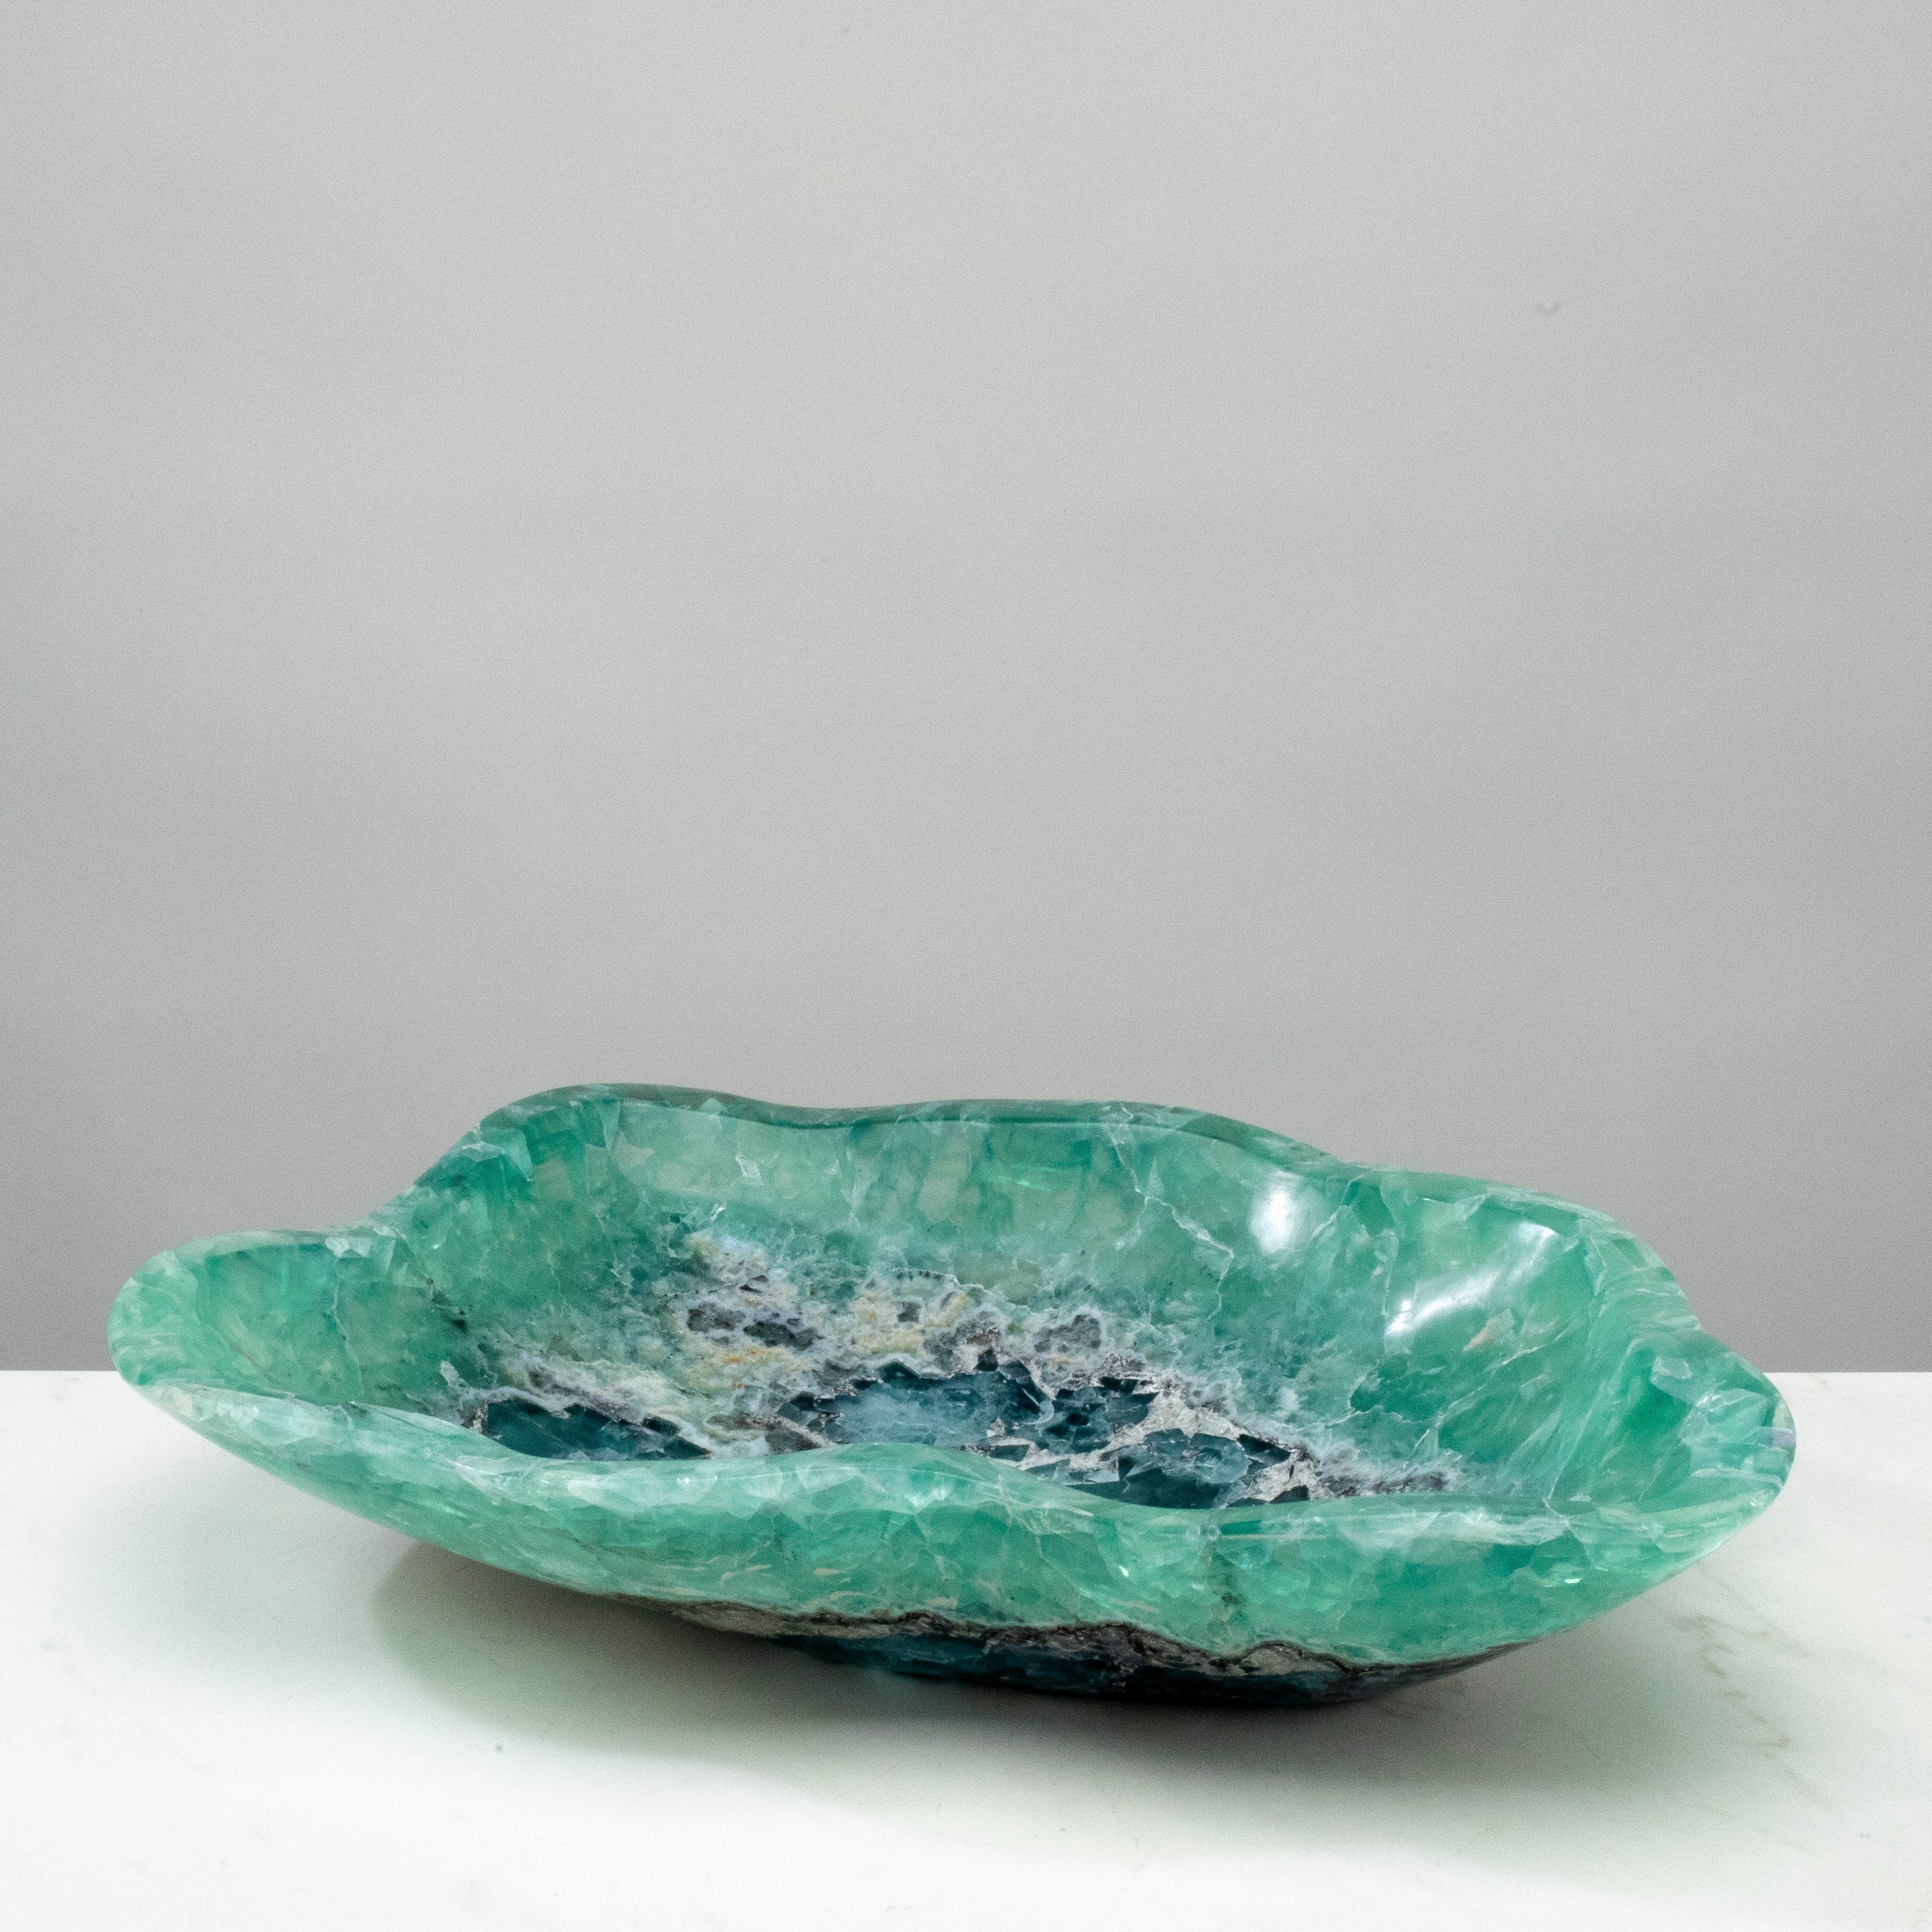 KALIFANO Gemstone Bowls Natural Blue / Green Fluorite Bowl 15.5" BFL7800.001